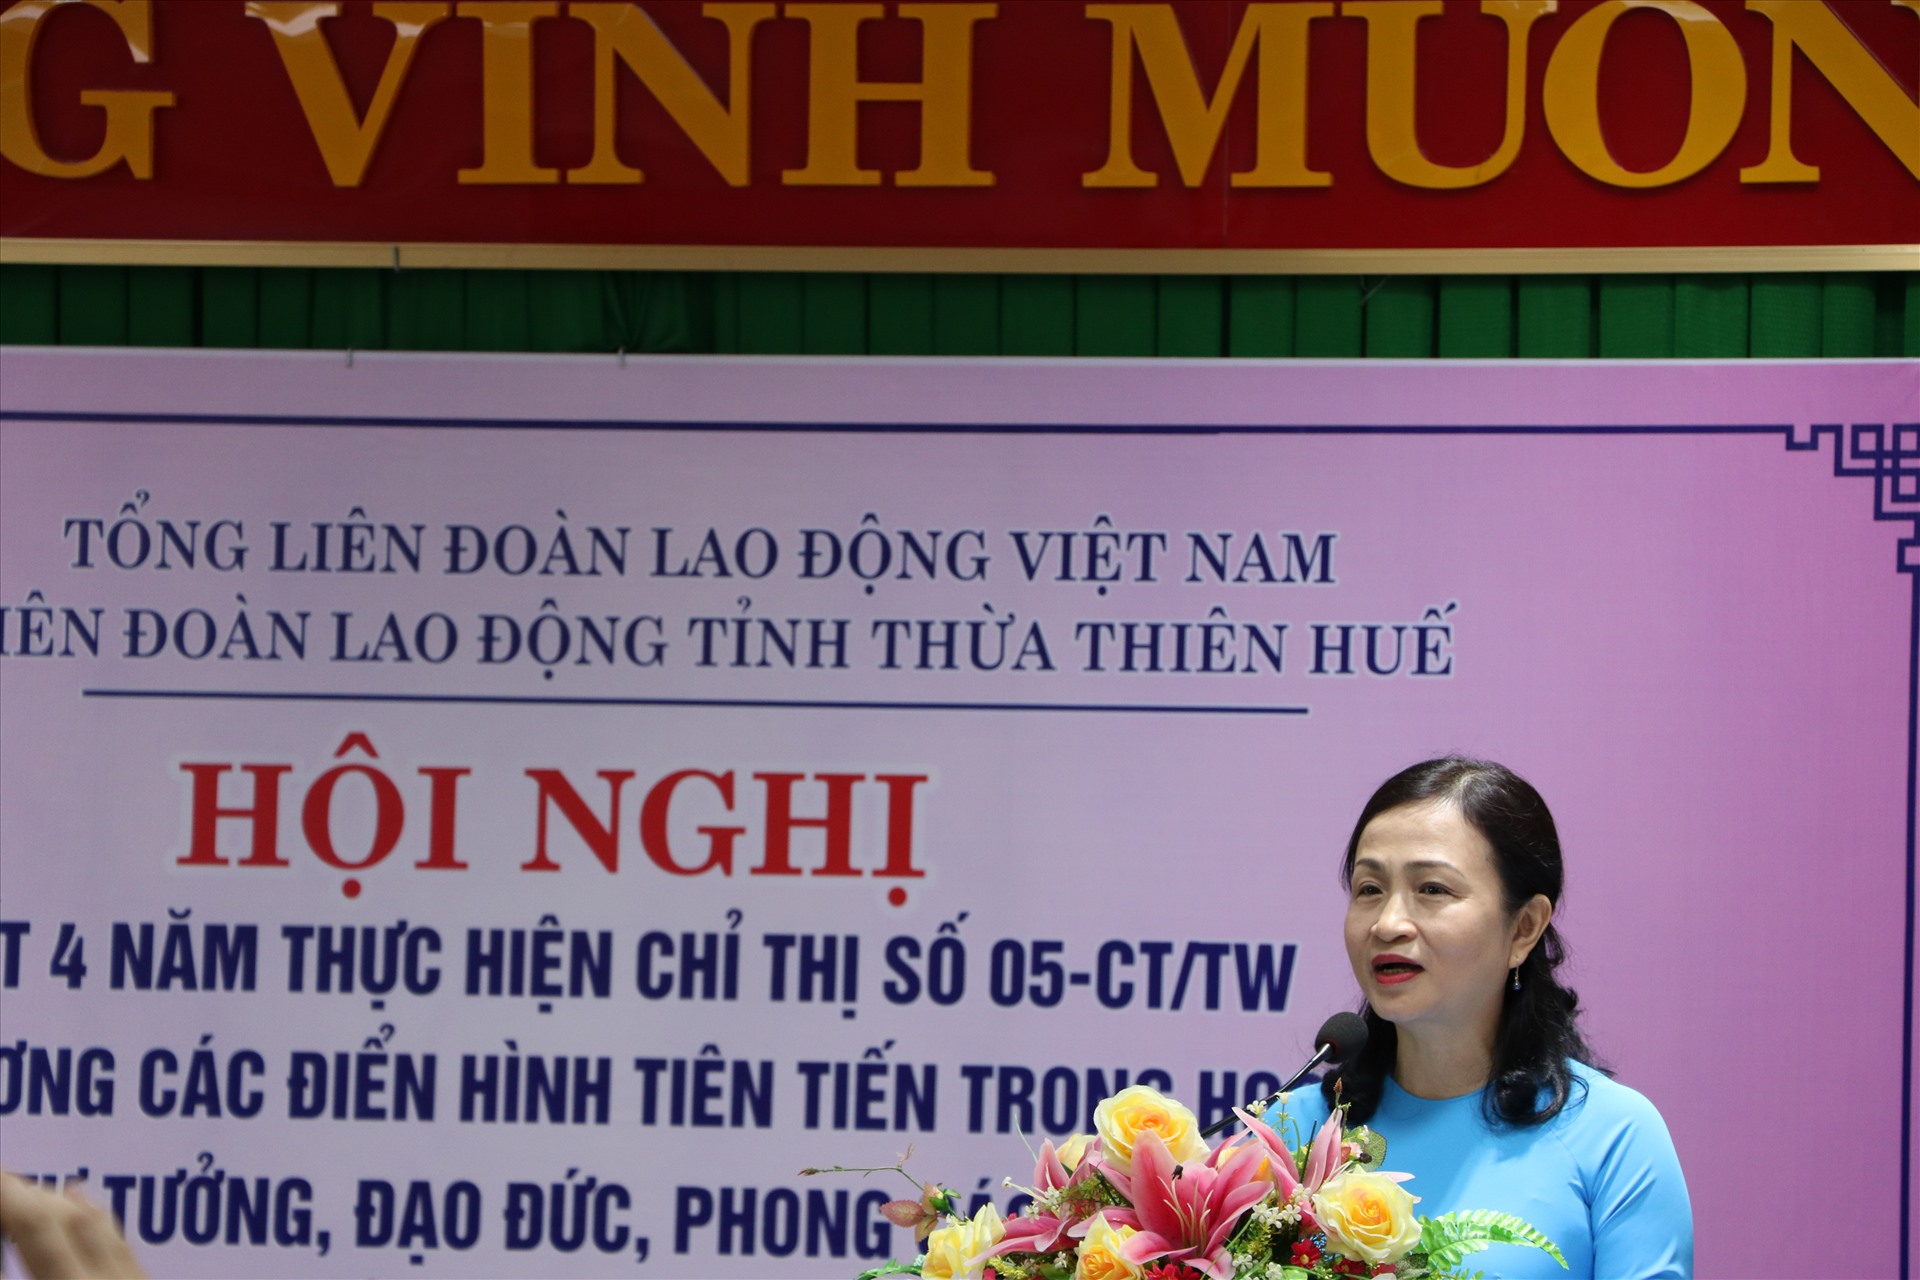 Bà Nguyễn Khoa Hoài Hương - Chủ tịch LĐLĐ tỉnh Thừa Thiên Huế phát biểu tại hội nghị. Ảnh: P. Đạt.